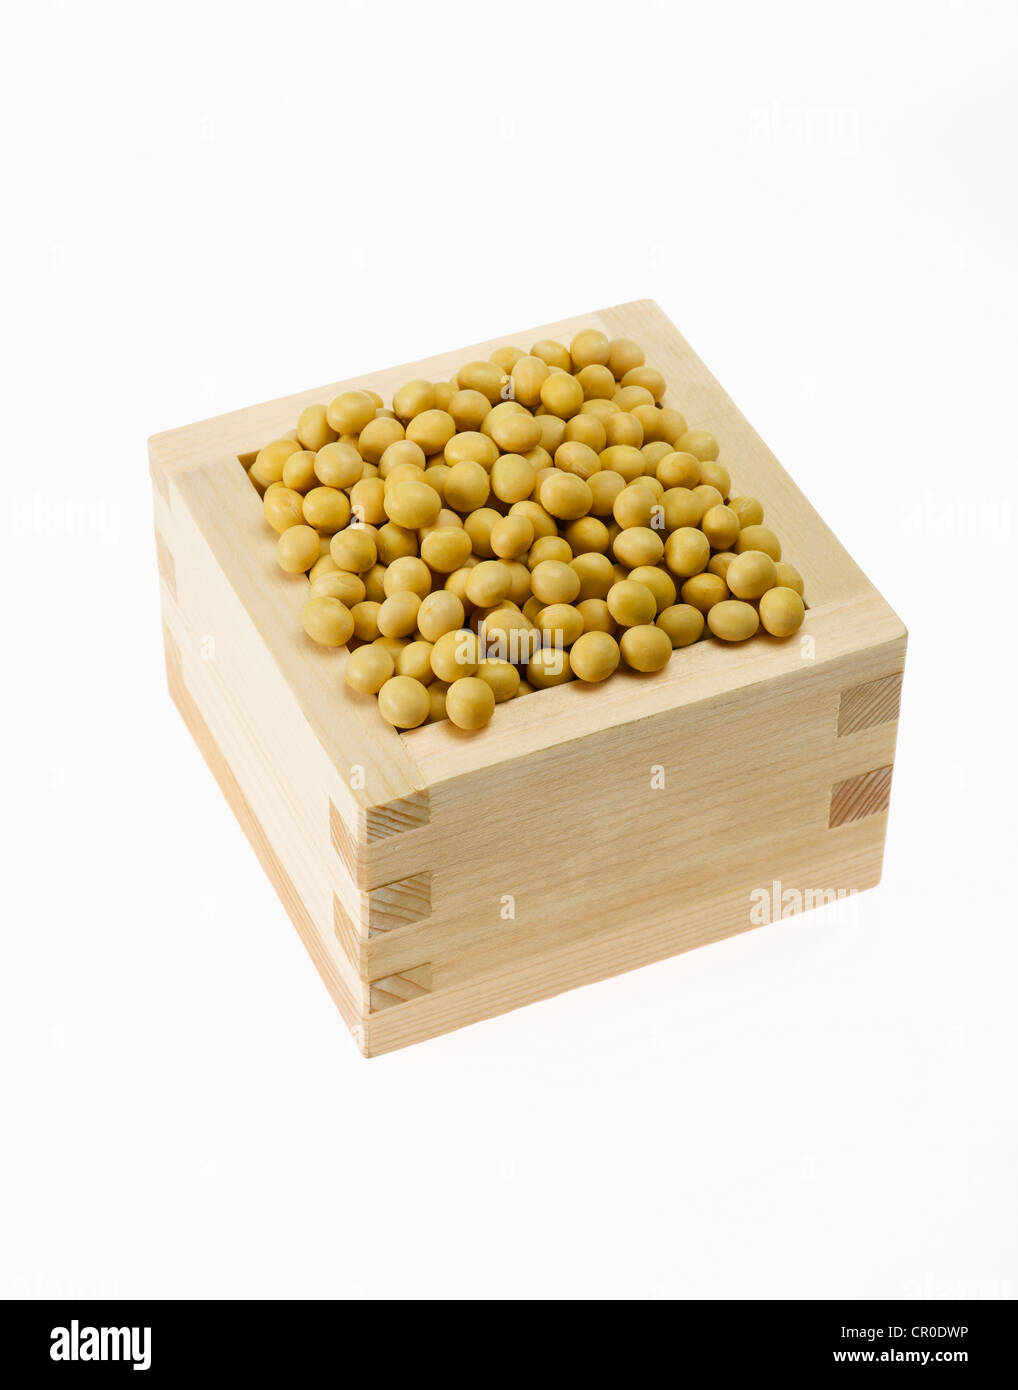 Le soja jaune dans la boîte carrée Banque D'Images